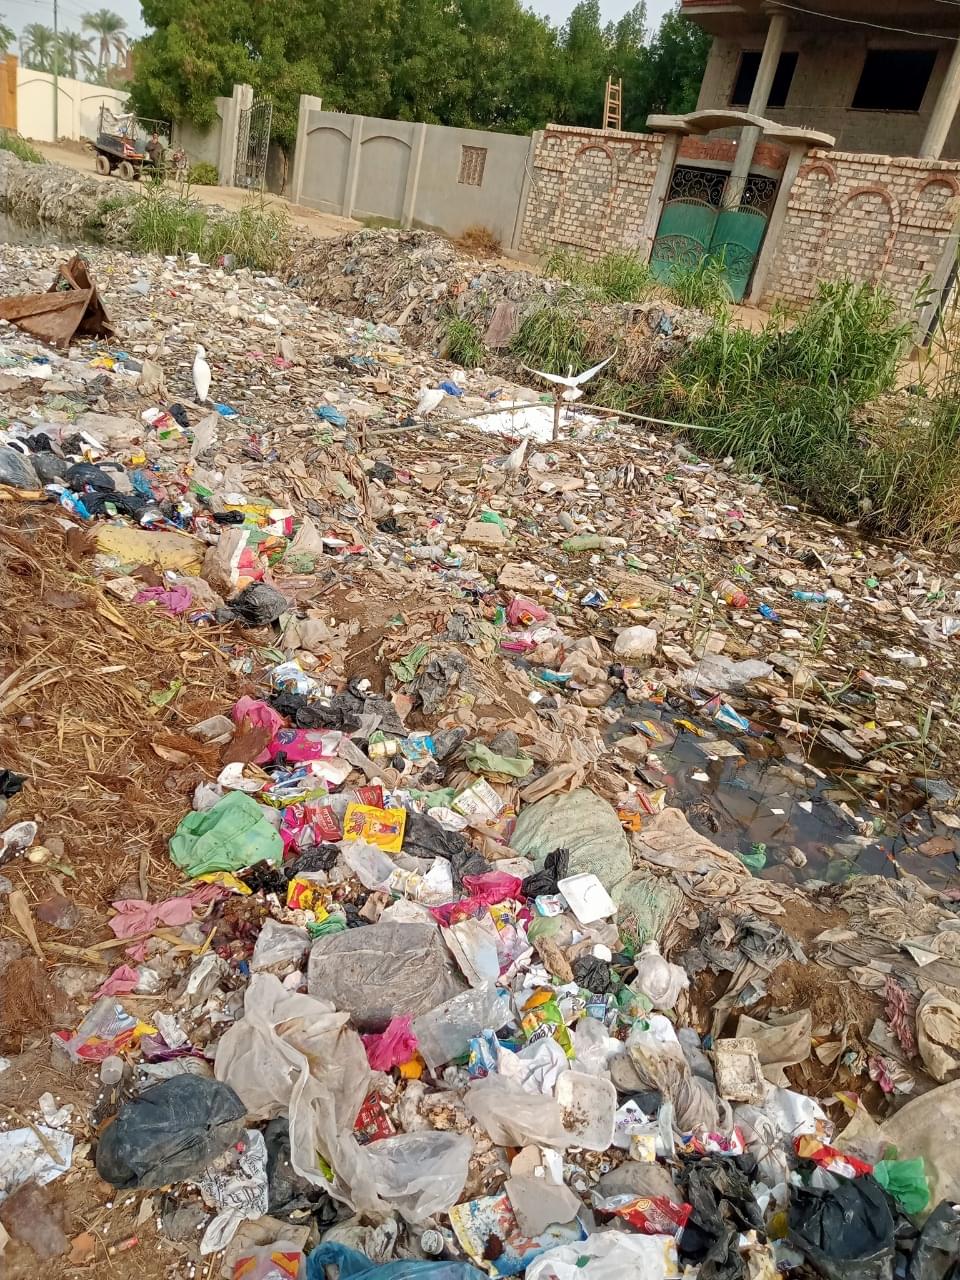 أهالي غمازة الكبرى بالصف يطالبون محافظ الجيزة بالتدخل لحل مشكلة القمامة المتراكمة بالقرية طوال العام